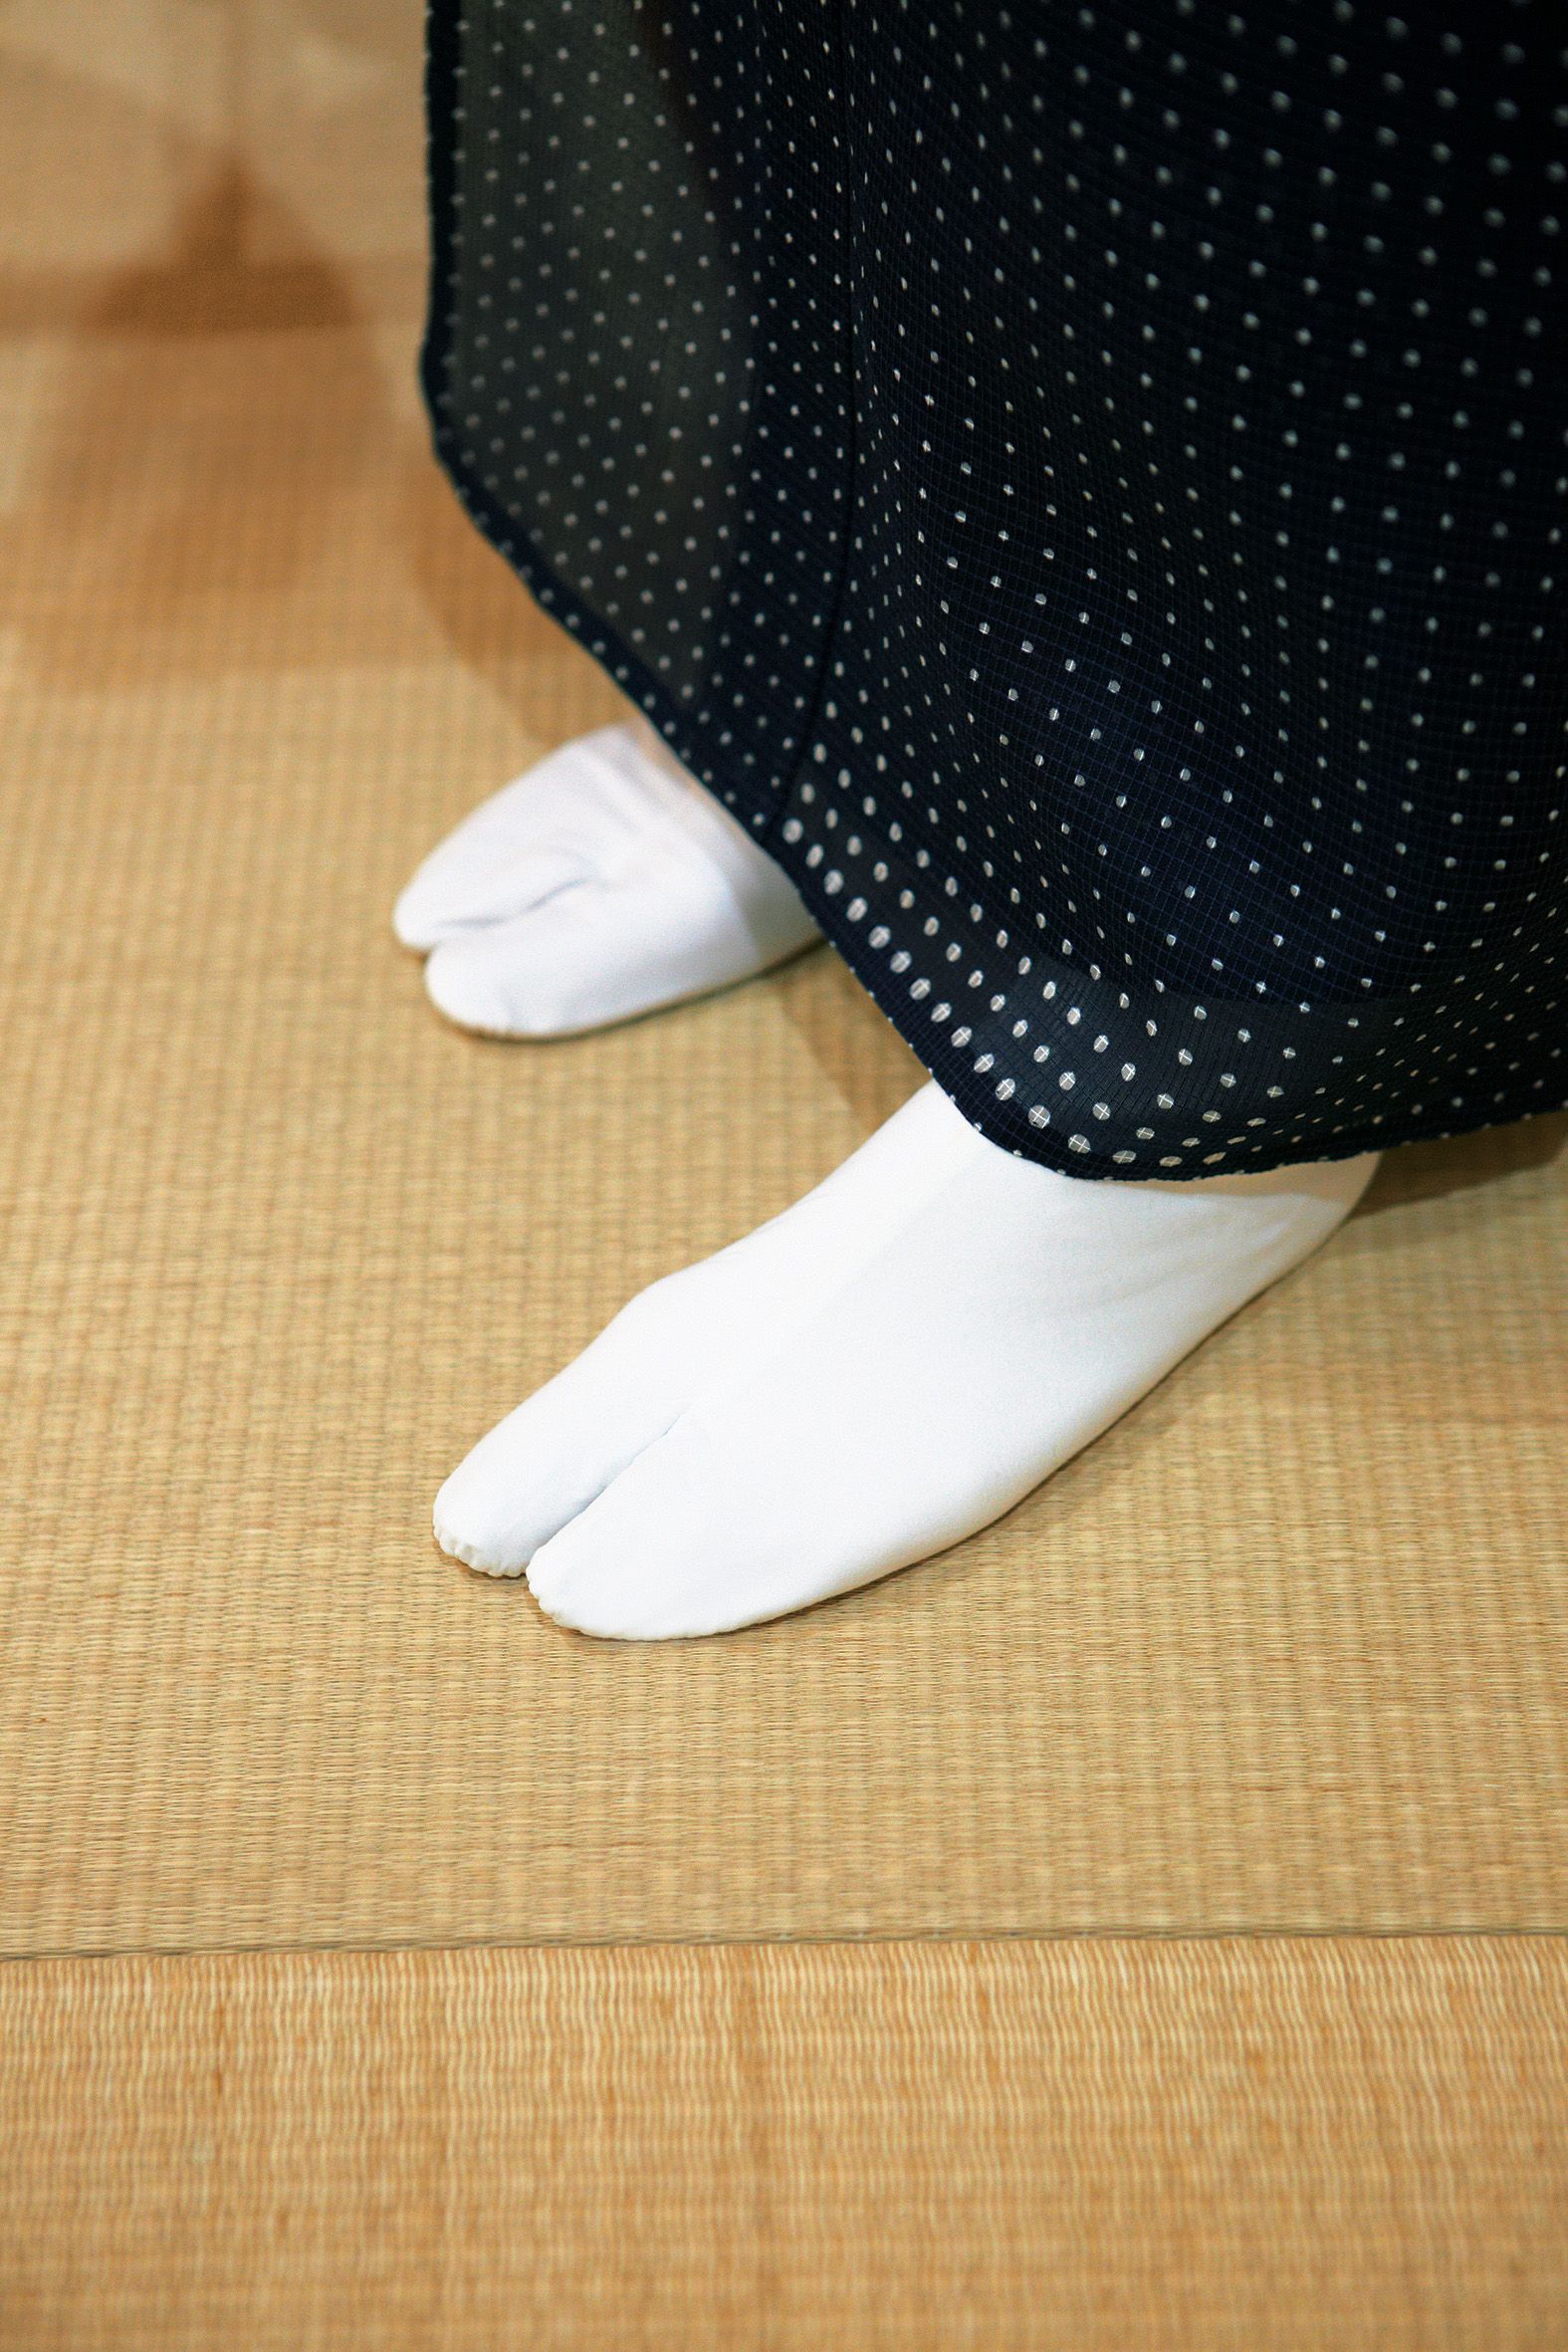 柴咲コウさんが 和装小物のお誂えに挑戦 シワのよらない 足袋 を叶える極意とは